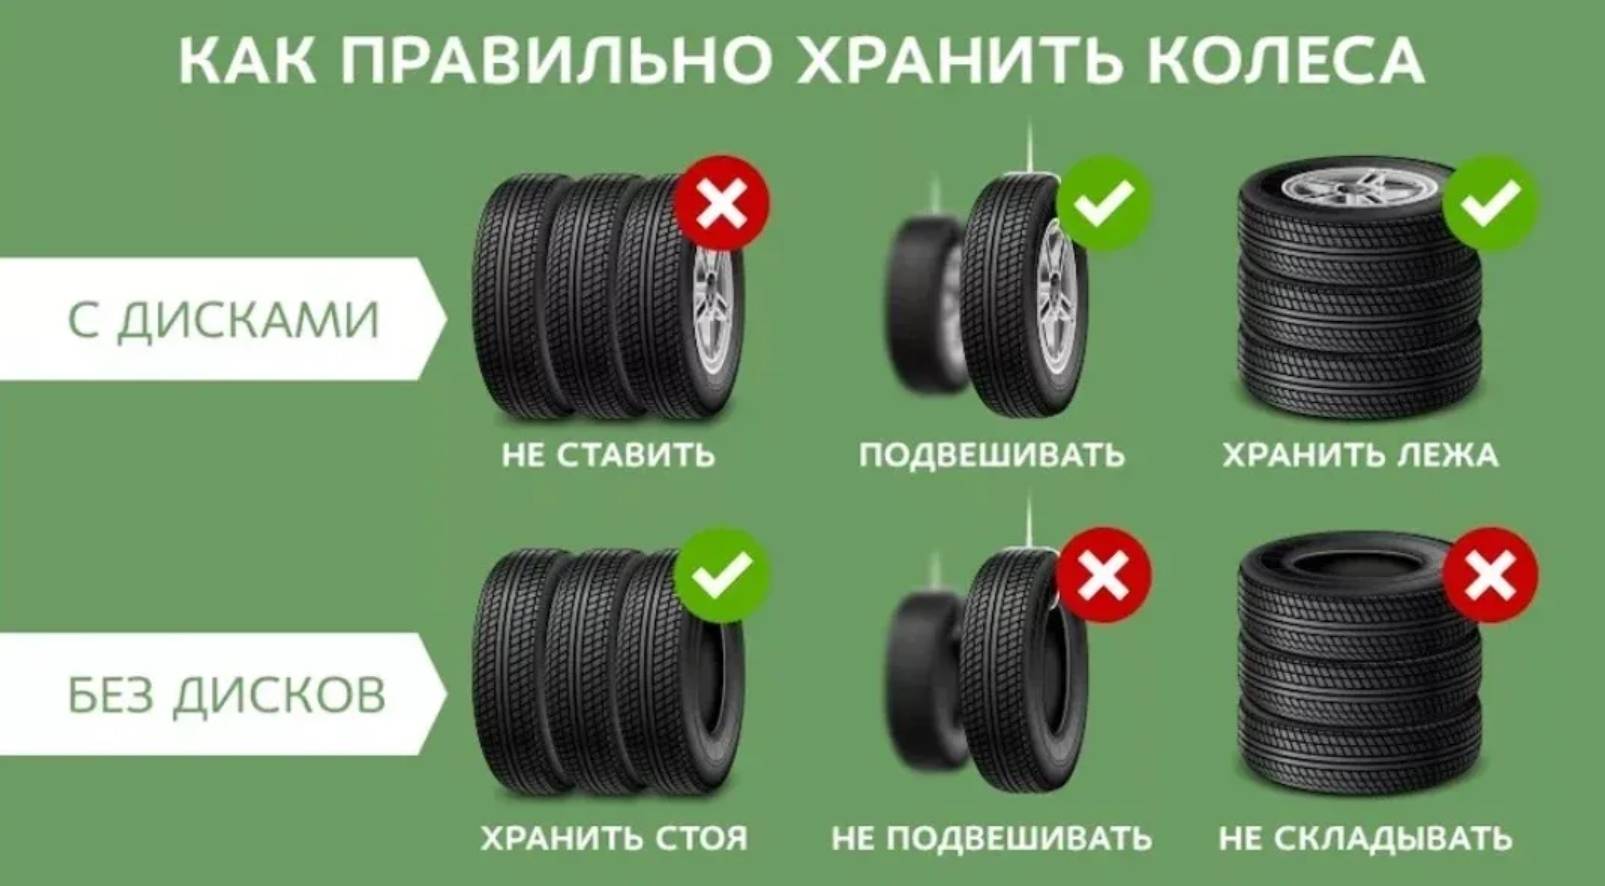 Как правильно хранить автомобильную резину (колеса)